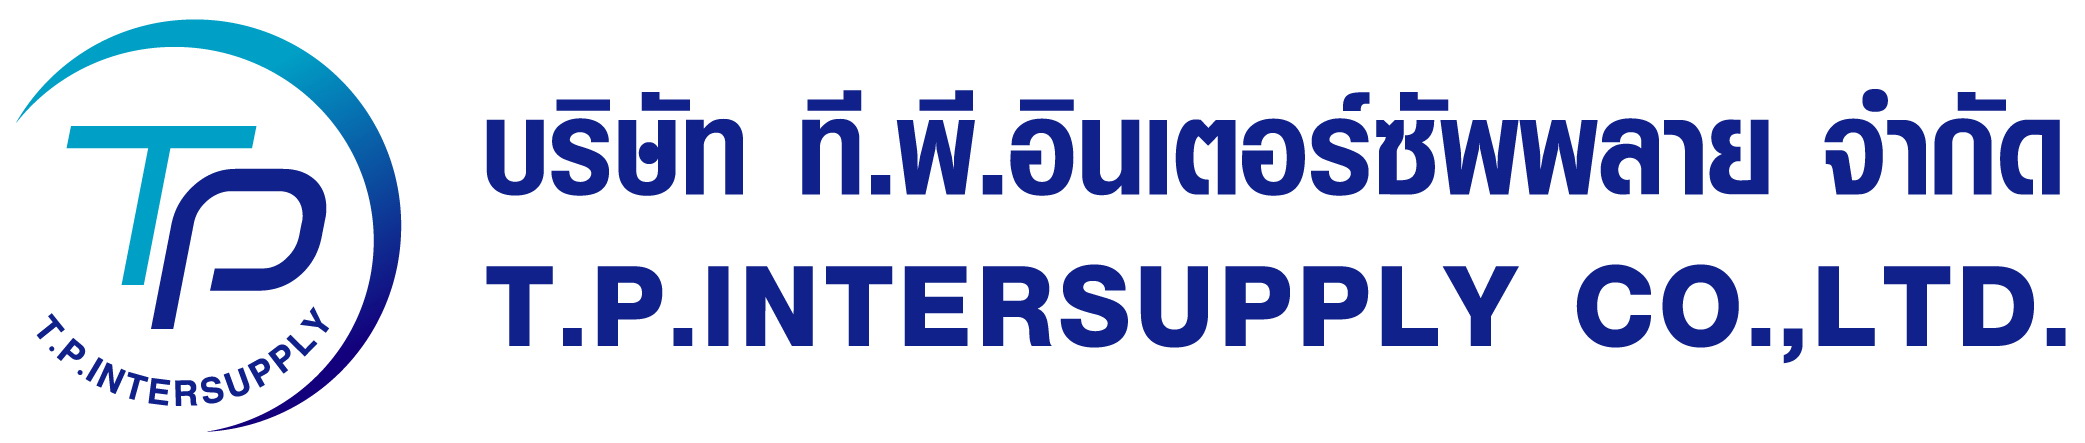 T.P. INTERSUPPLY CO.,LTD, บริษัท ที.พี.อินเตอร์ซัพพลาย จำกัด